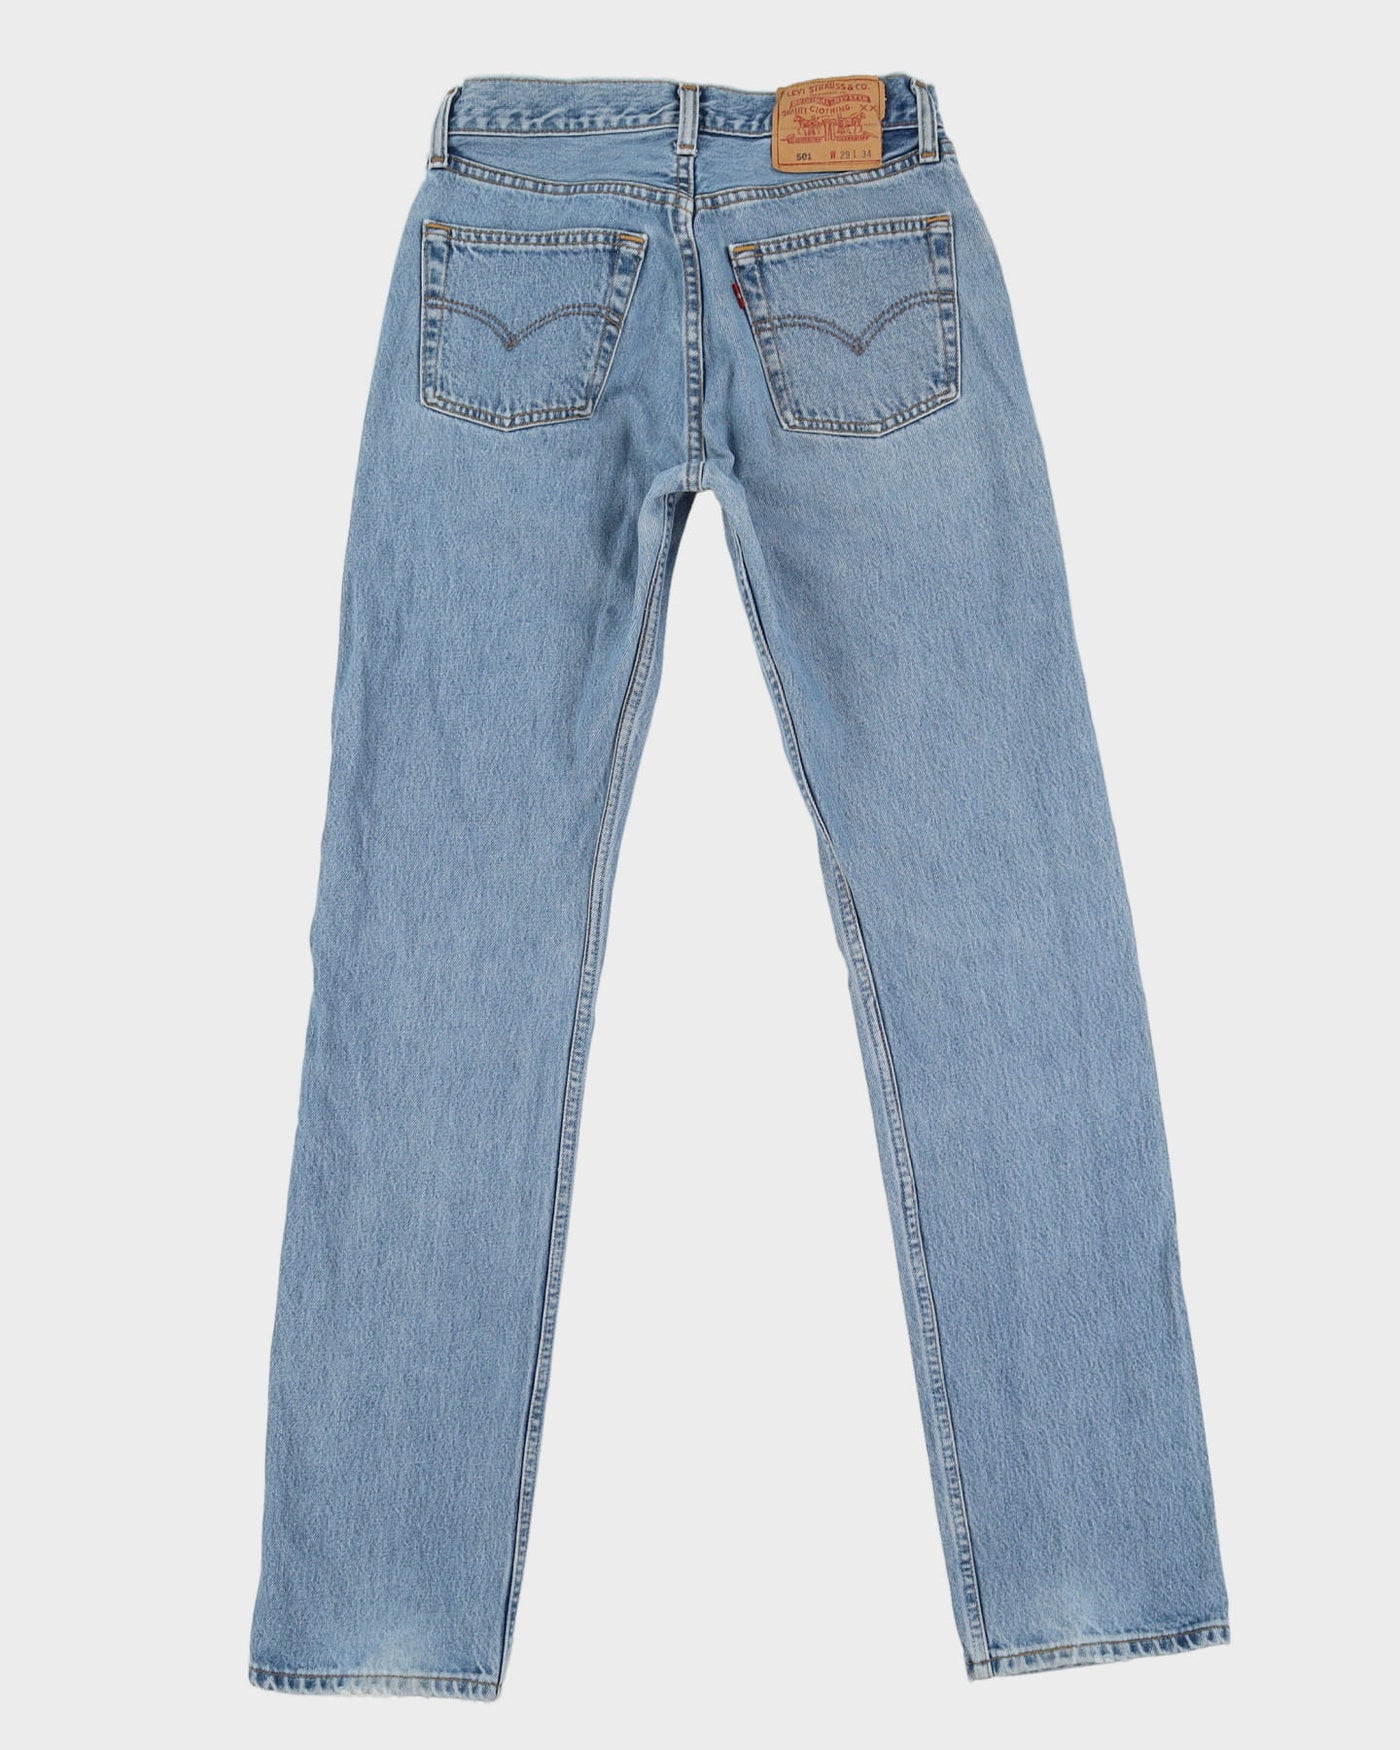 Vintage 90s Levi's 501 Blue Light Wash Jeans - W27 L33